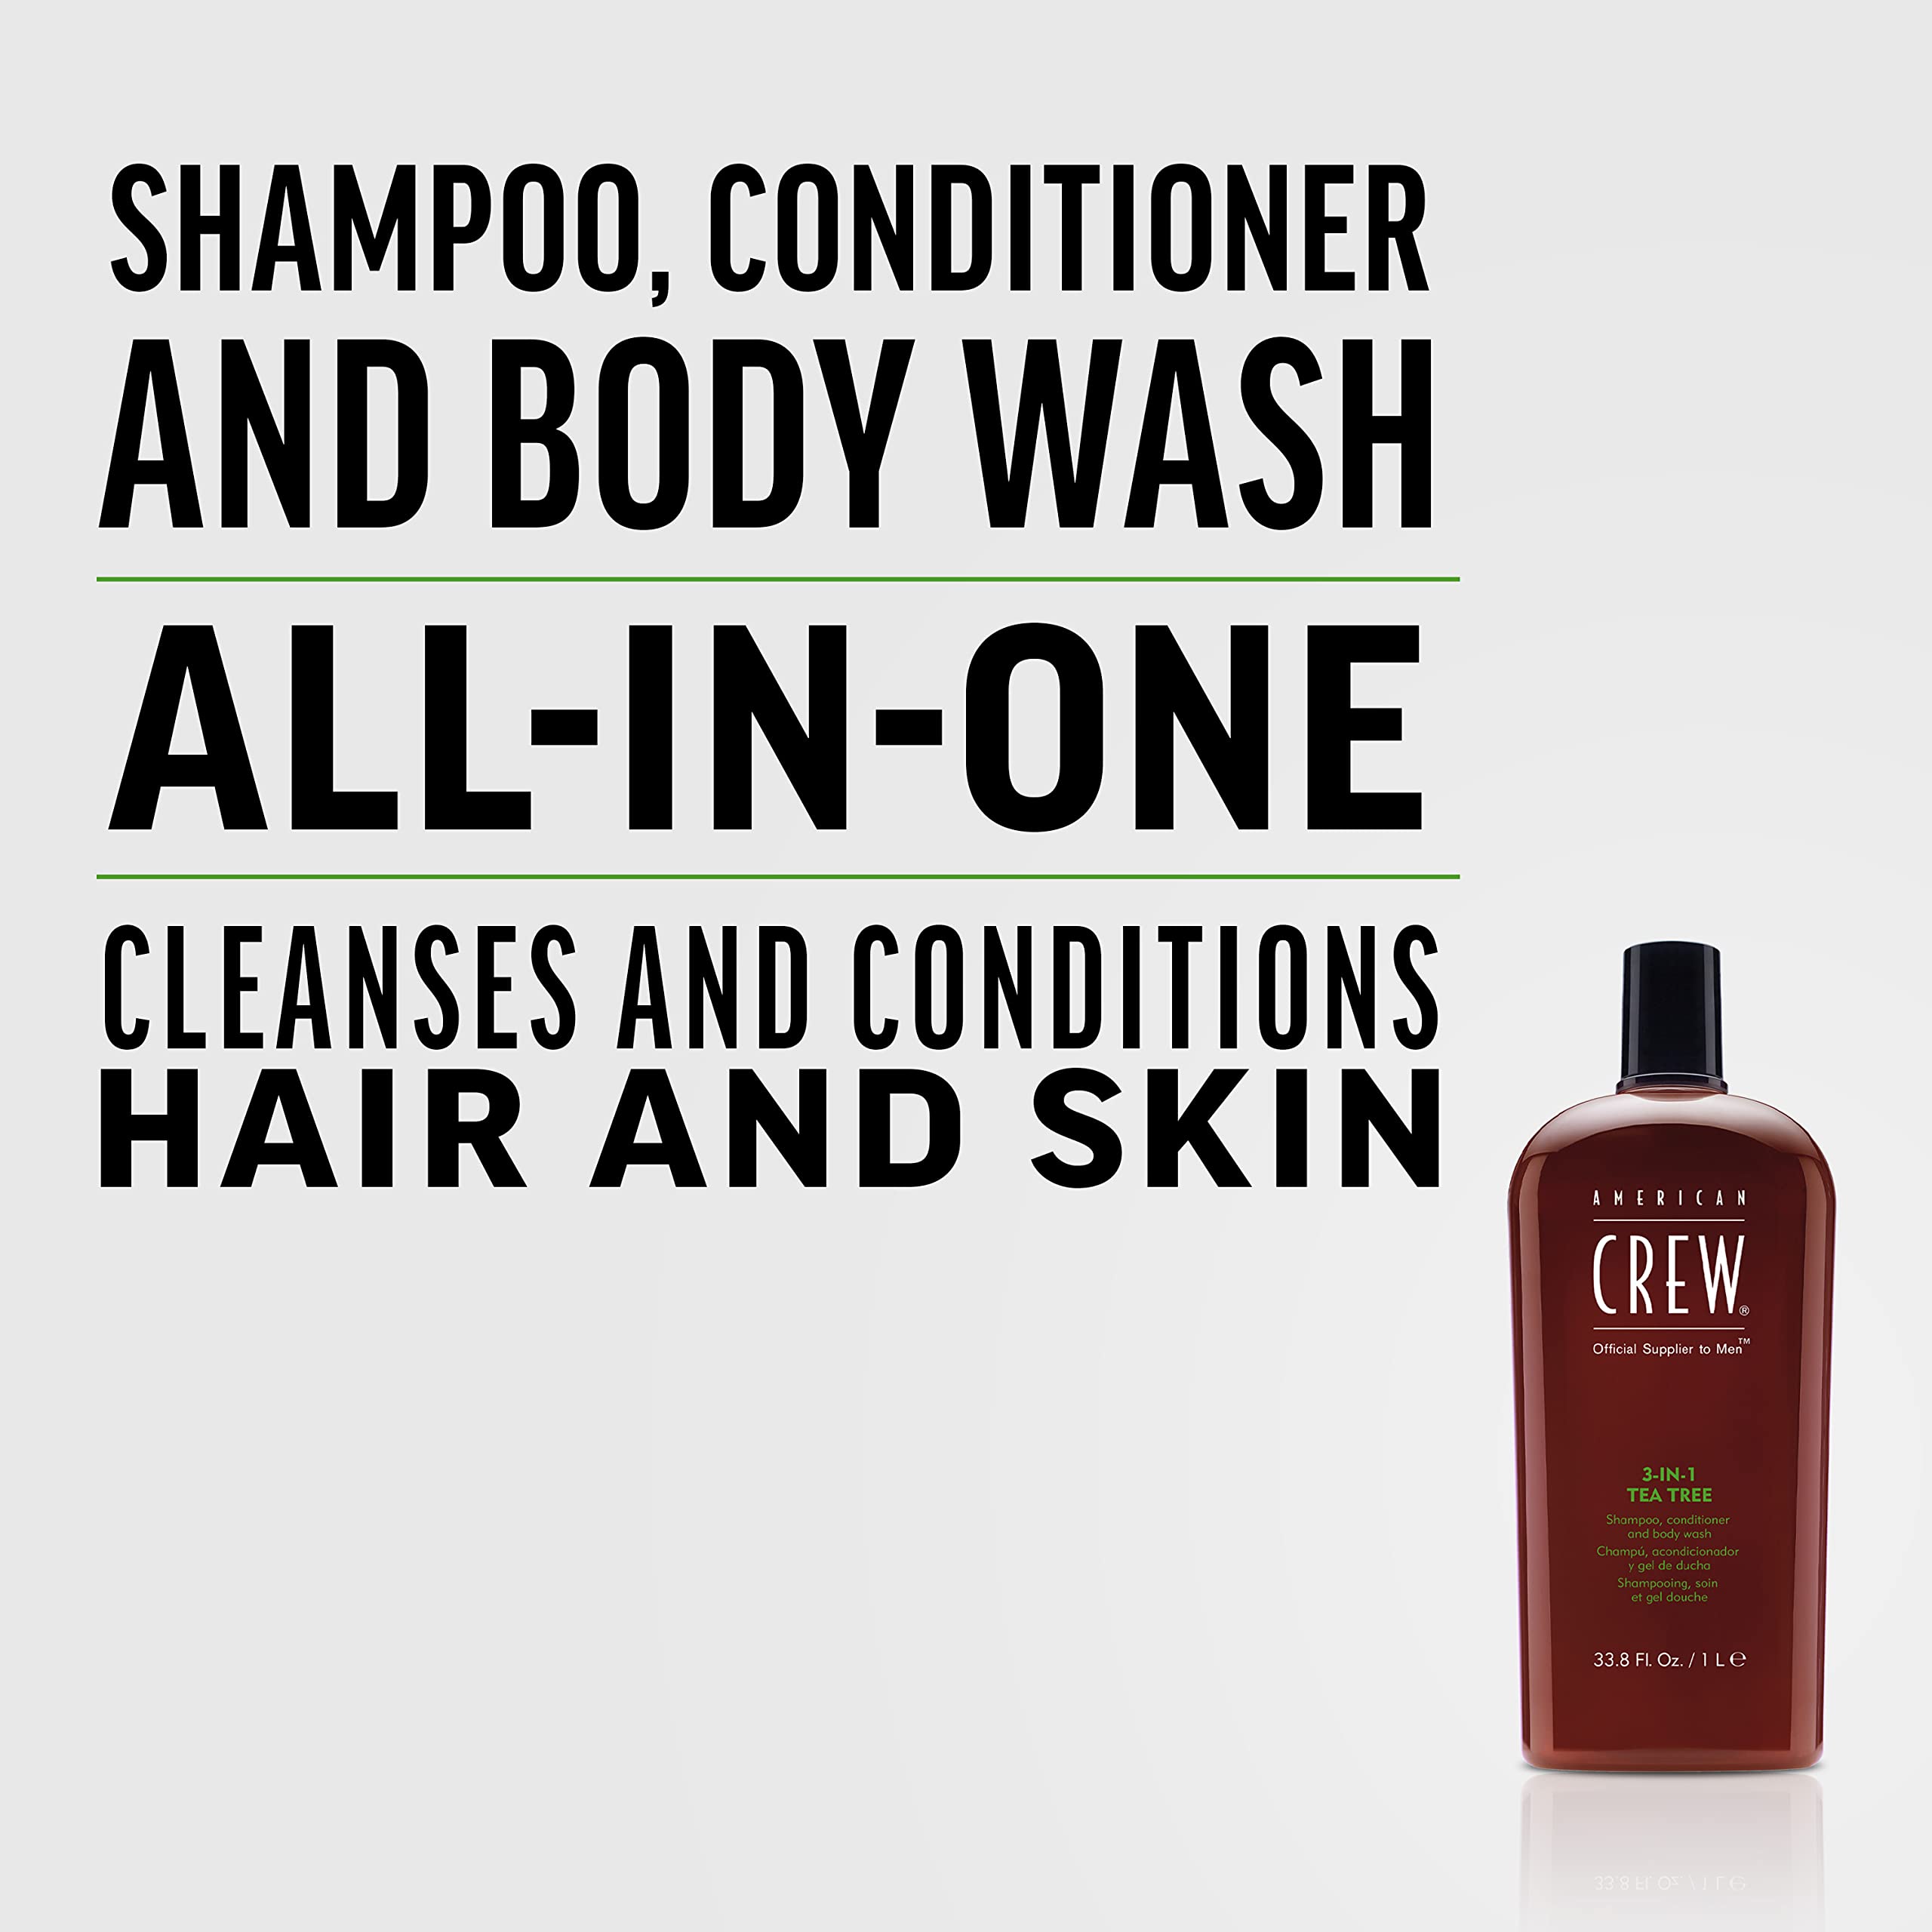 AMERICAN CREW Shampoo, Conditioner & Body Wash for Men, 3-in-1, Tea Tree Scent, 8.4 Fl Oz